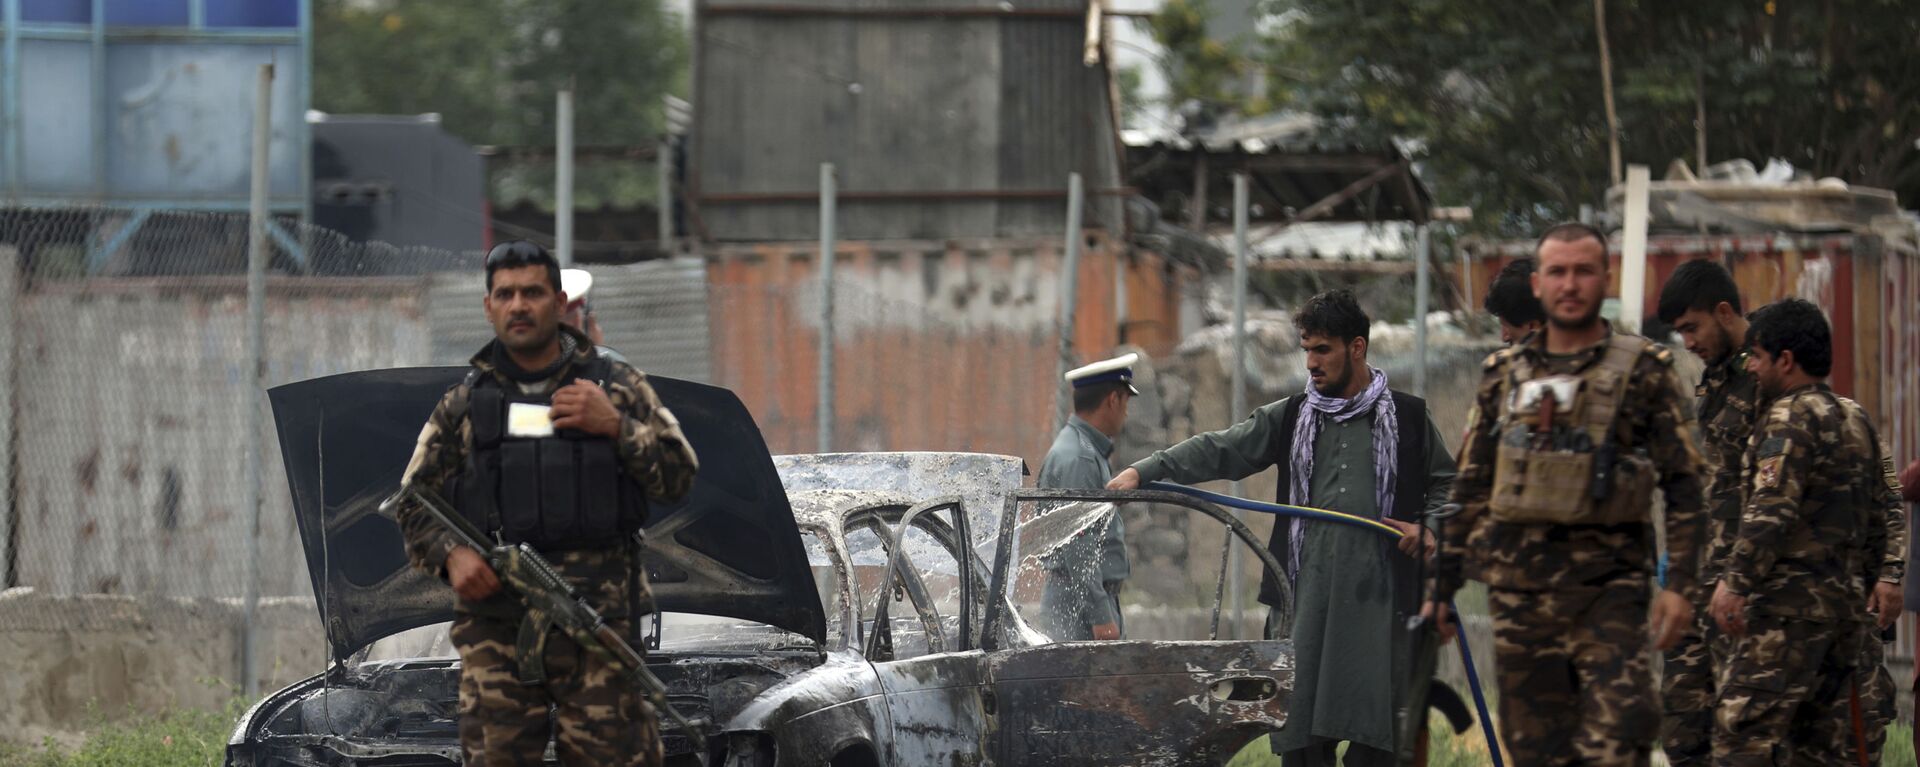 Nhân viên an ninh kiểm tra một chiếc xe bị hư hại trong cuộc pháo kích vào Kabul - Sputnik Việt Nam, 1920, 18.09.2021